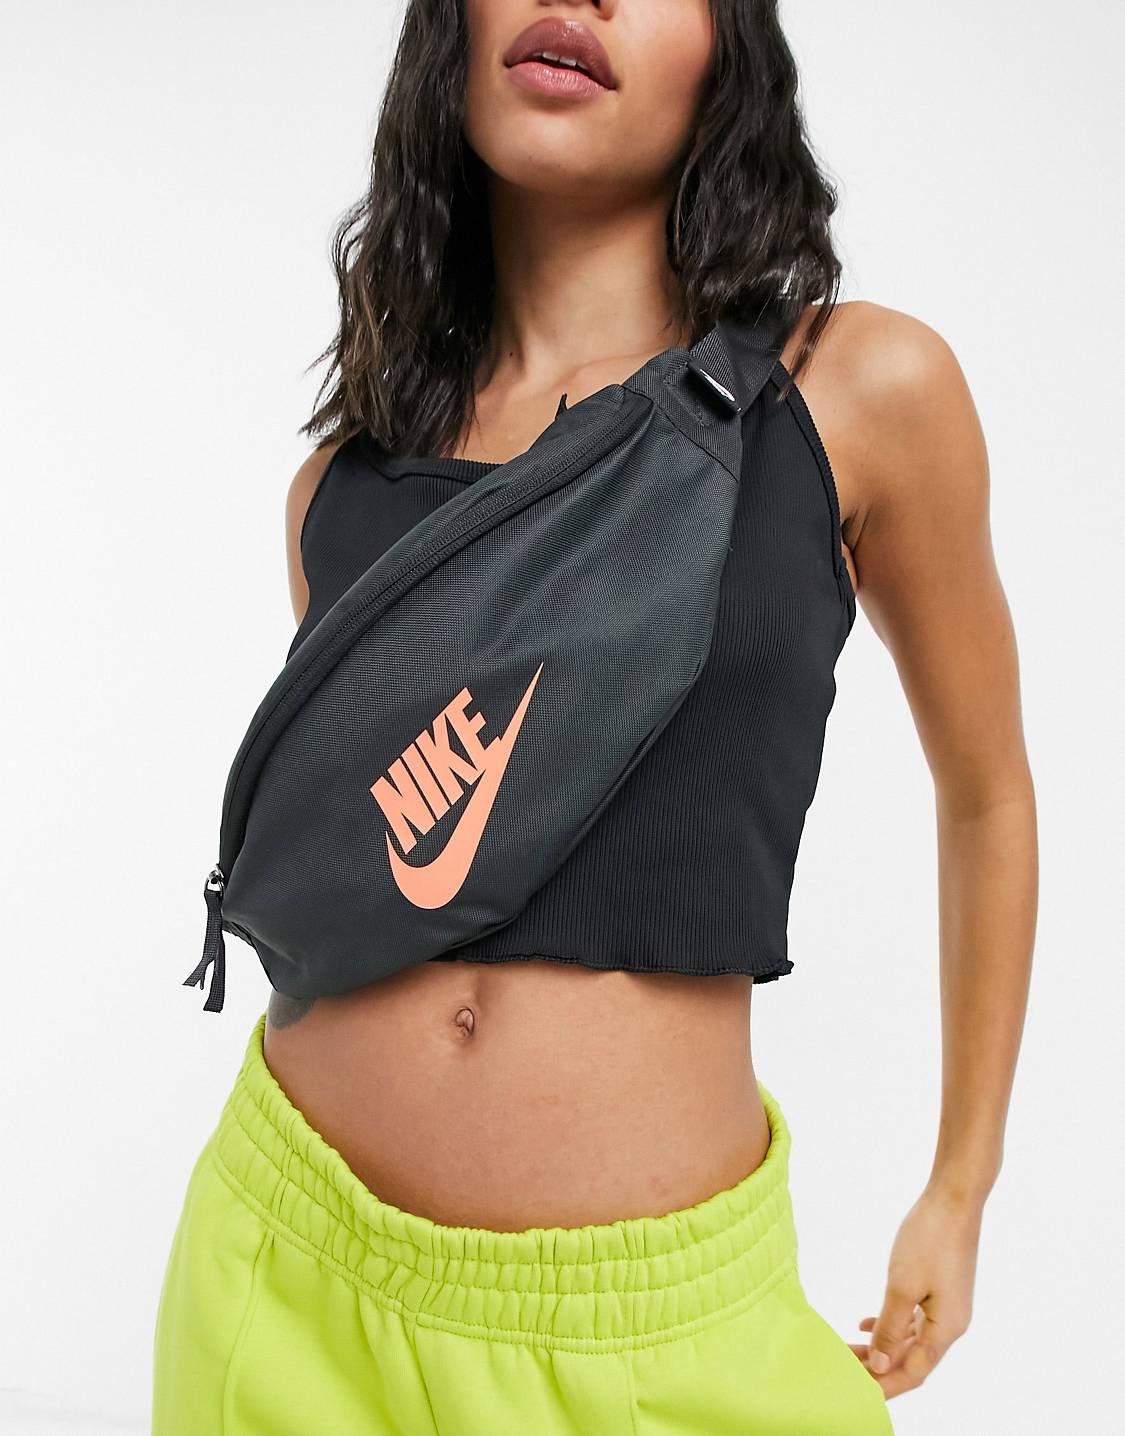 Bolsos Y Mujer | Nike Riñonera Y Naranja De Estilo Bandolera De Gris · Ride Coattails